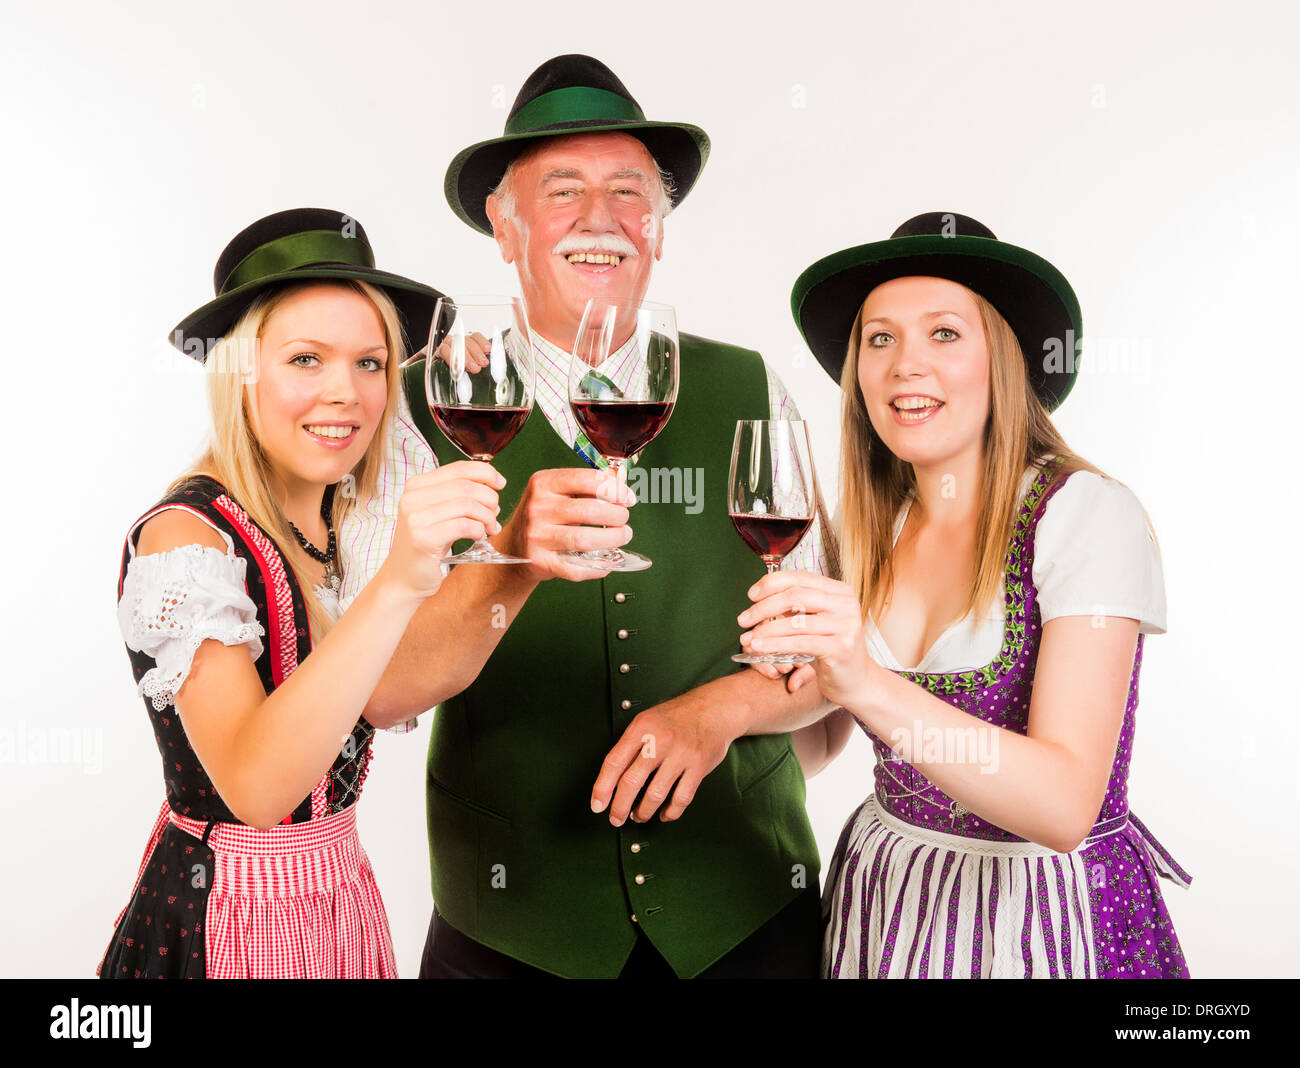 Senior und zwei junge Frauen in Tracht mit Weingläsern - people in traditional costume with wine glasses Stock Photo